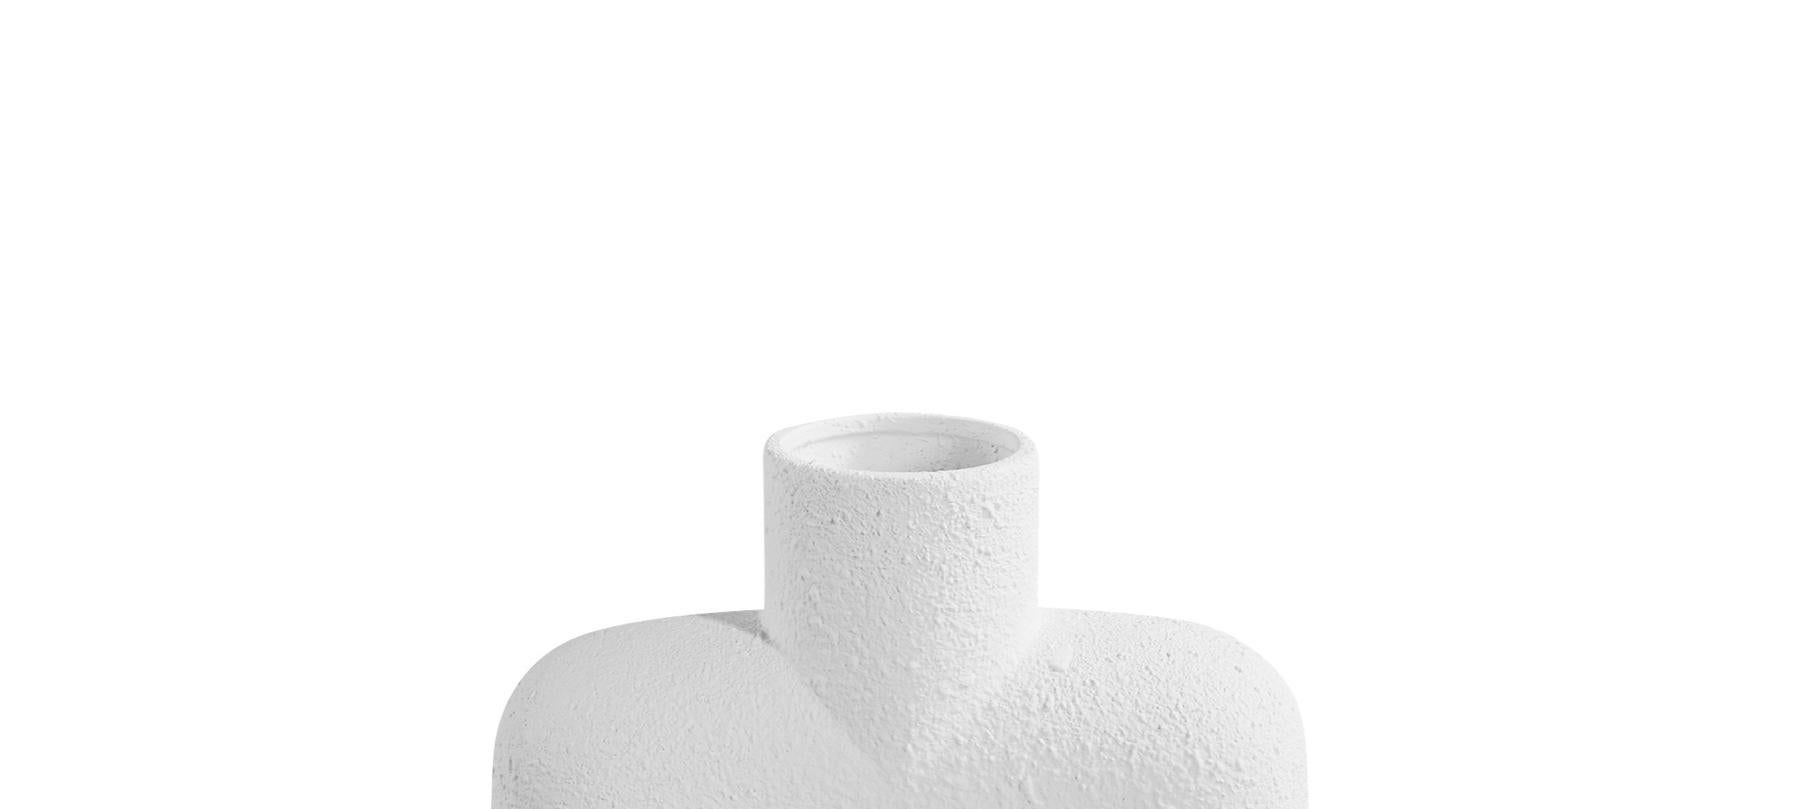 Zeitgenössische Keramikvase im dänischen Design mit weißer Struktur und einer runden Tülle auf einem Sockel aus zwei runden Kugeln.
Sehr skulpturales Design.
Zwei davon sind erhältlich und werden einzeln verkauft.

   